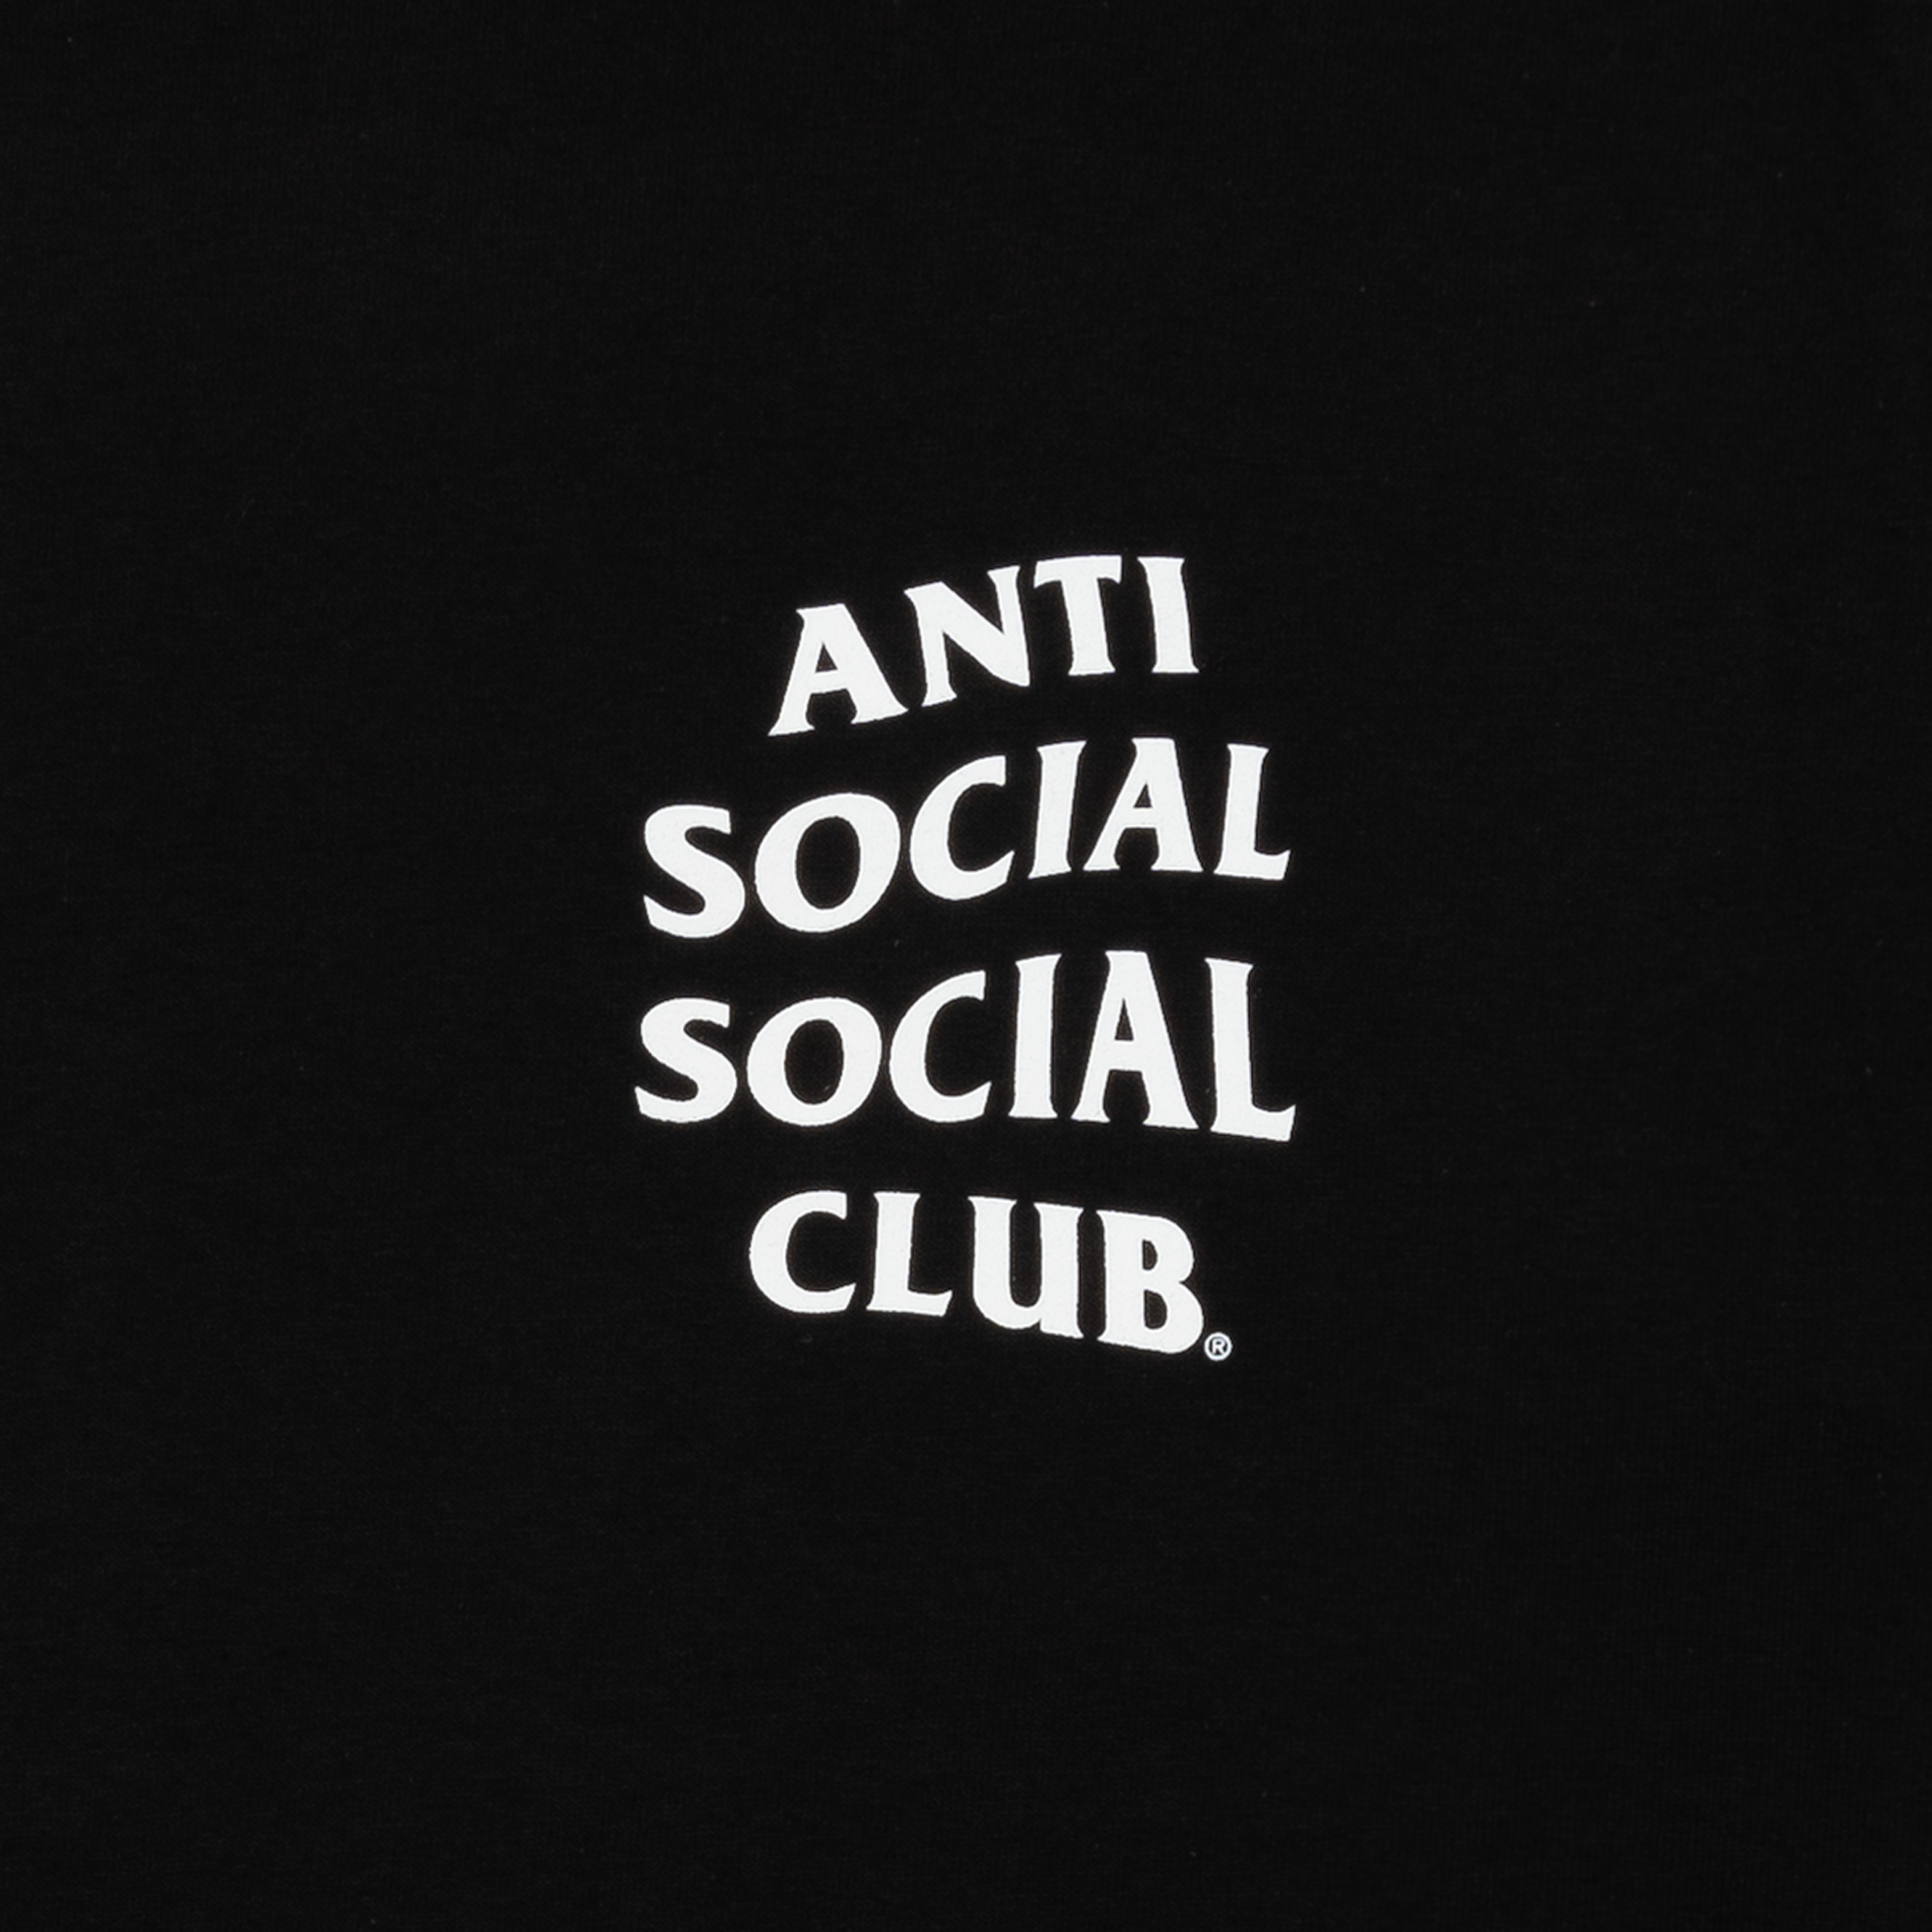 Anti Social Social Club Kkoch Tee Black-PLUS